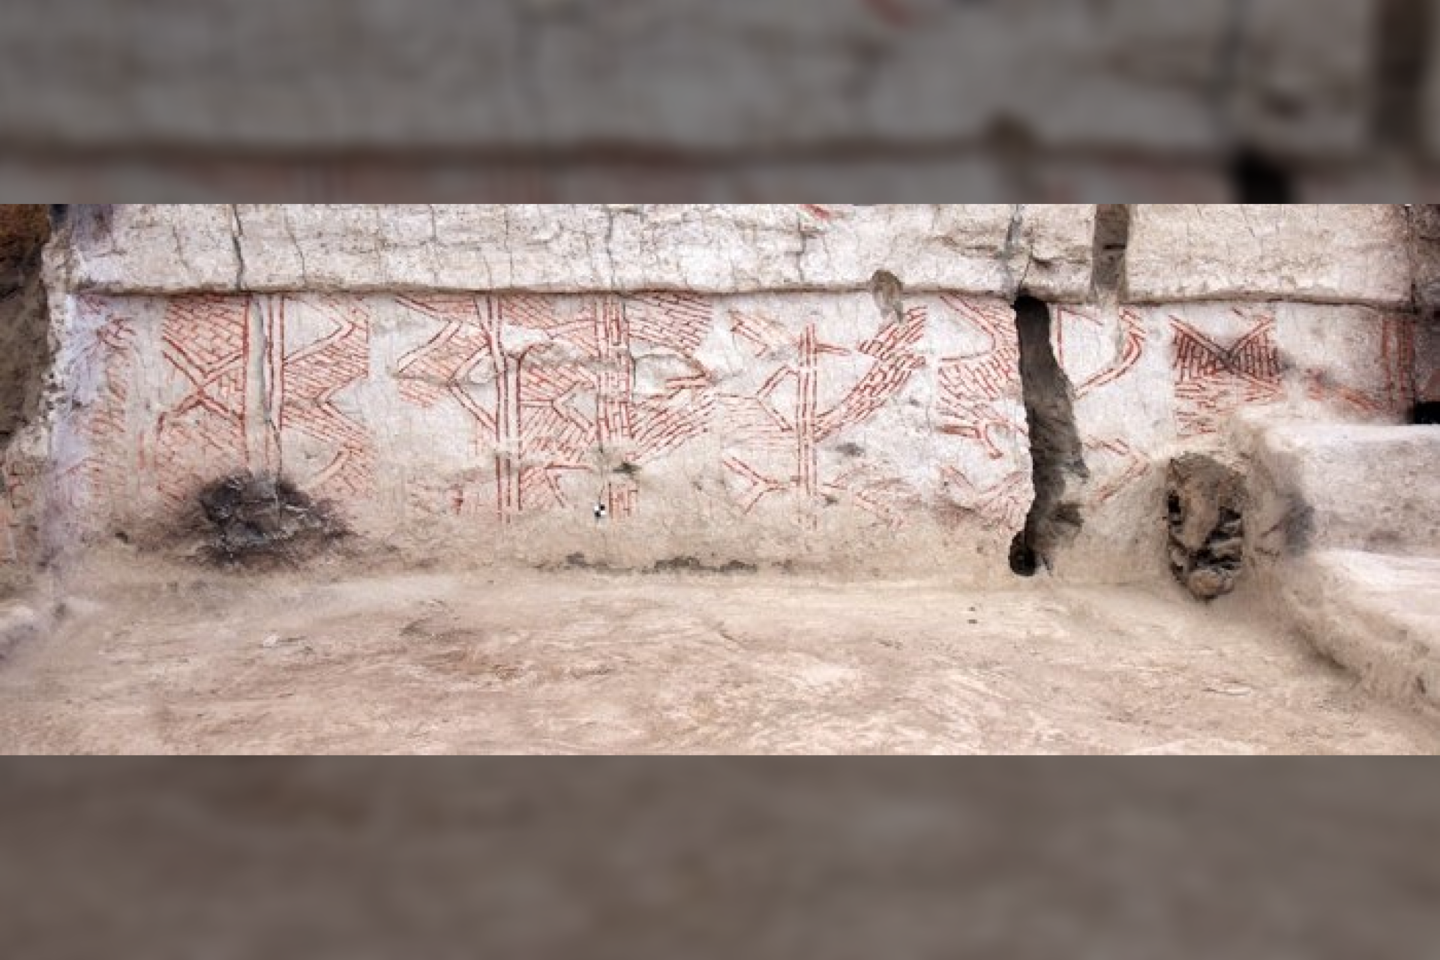  Geometrinė sienų tapyba pastato viduje.<br> (J. Quinlan o / Çatalhöyüko tyrimų projekto nuotr.